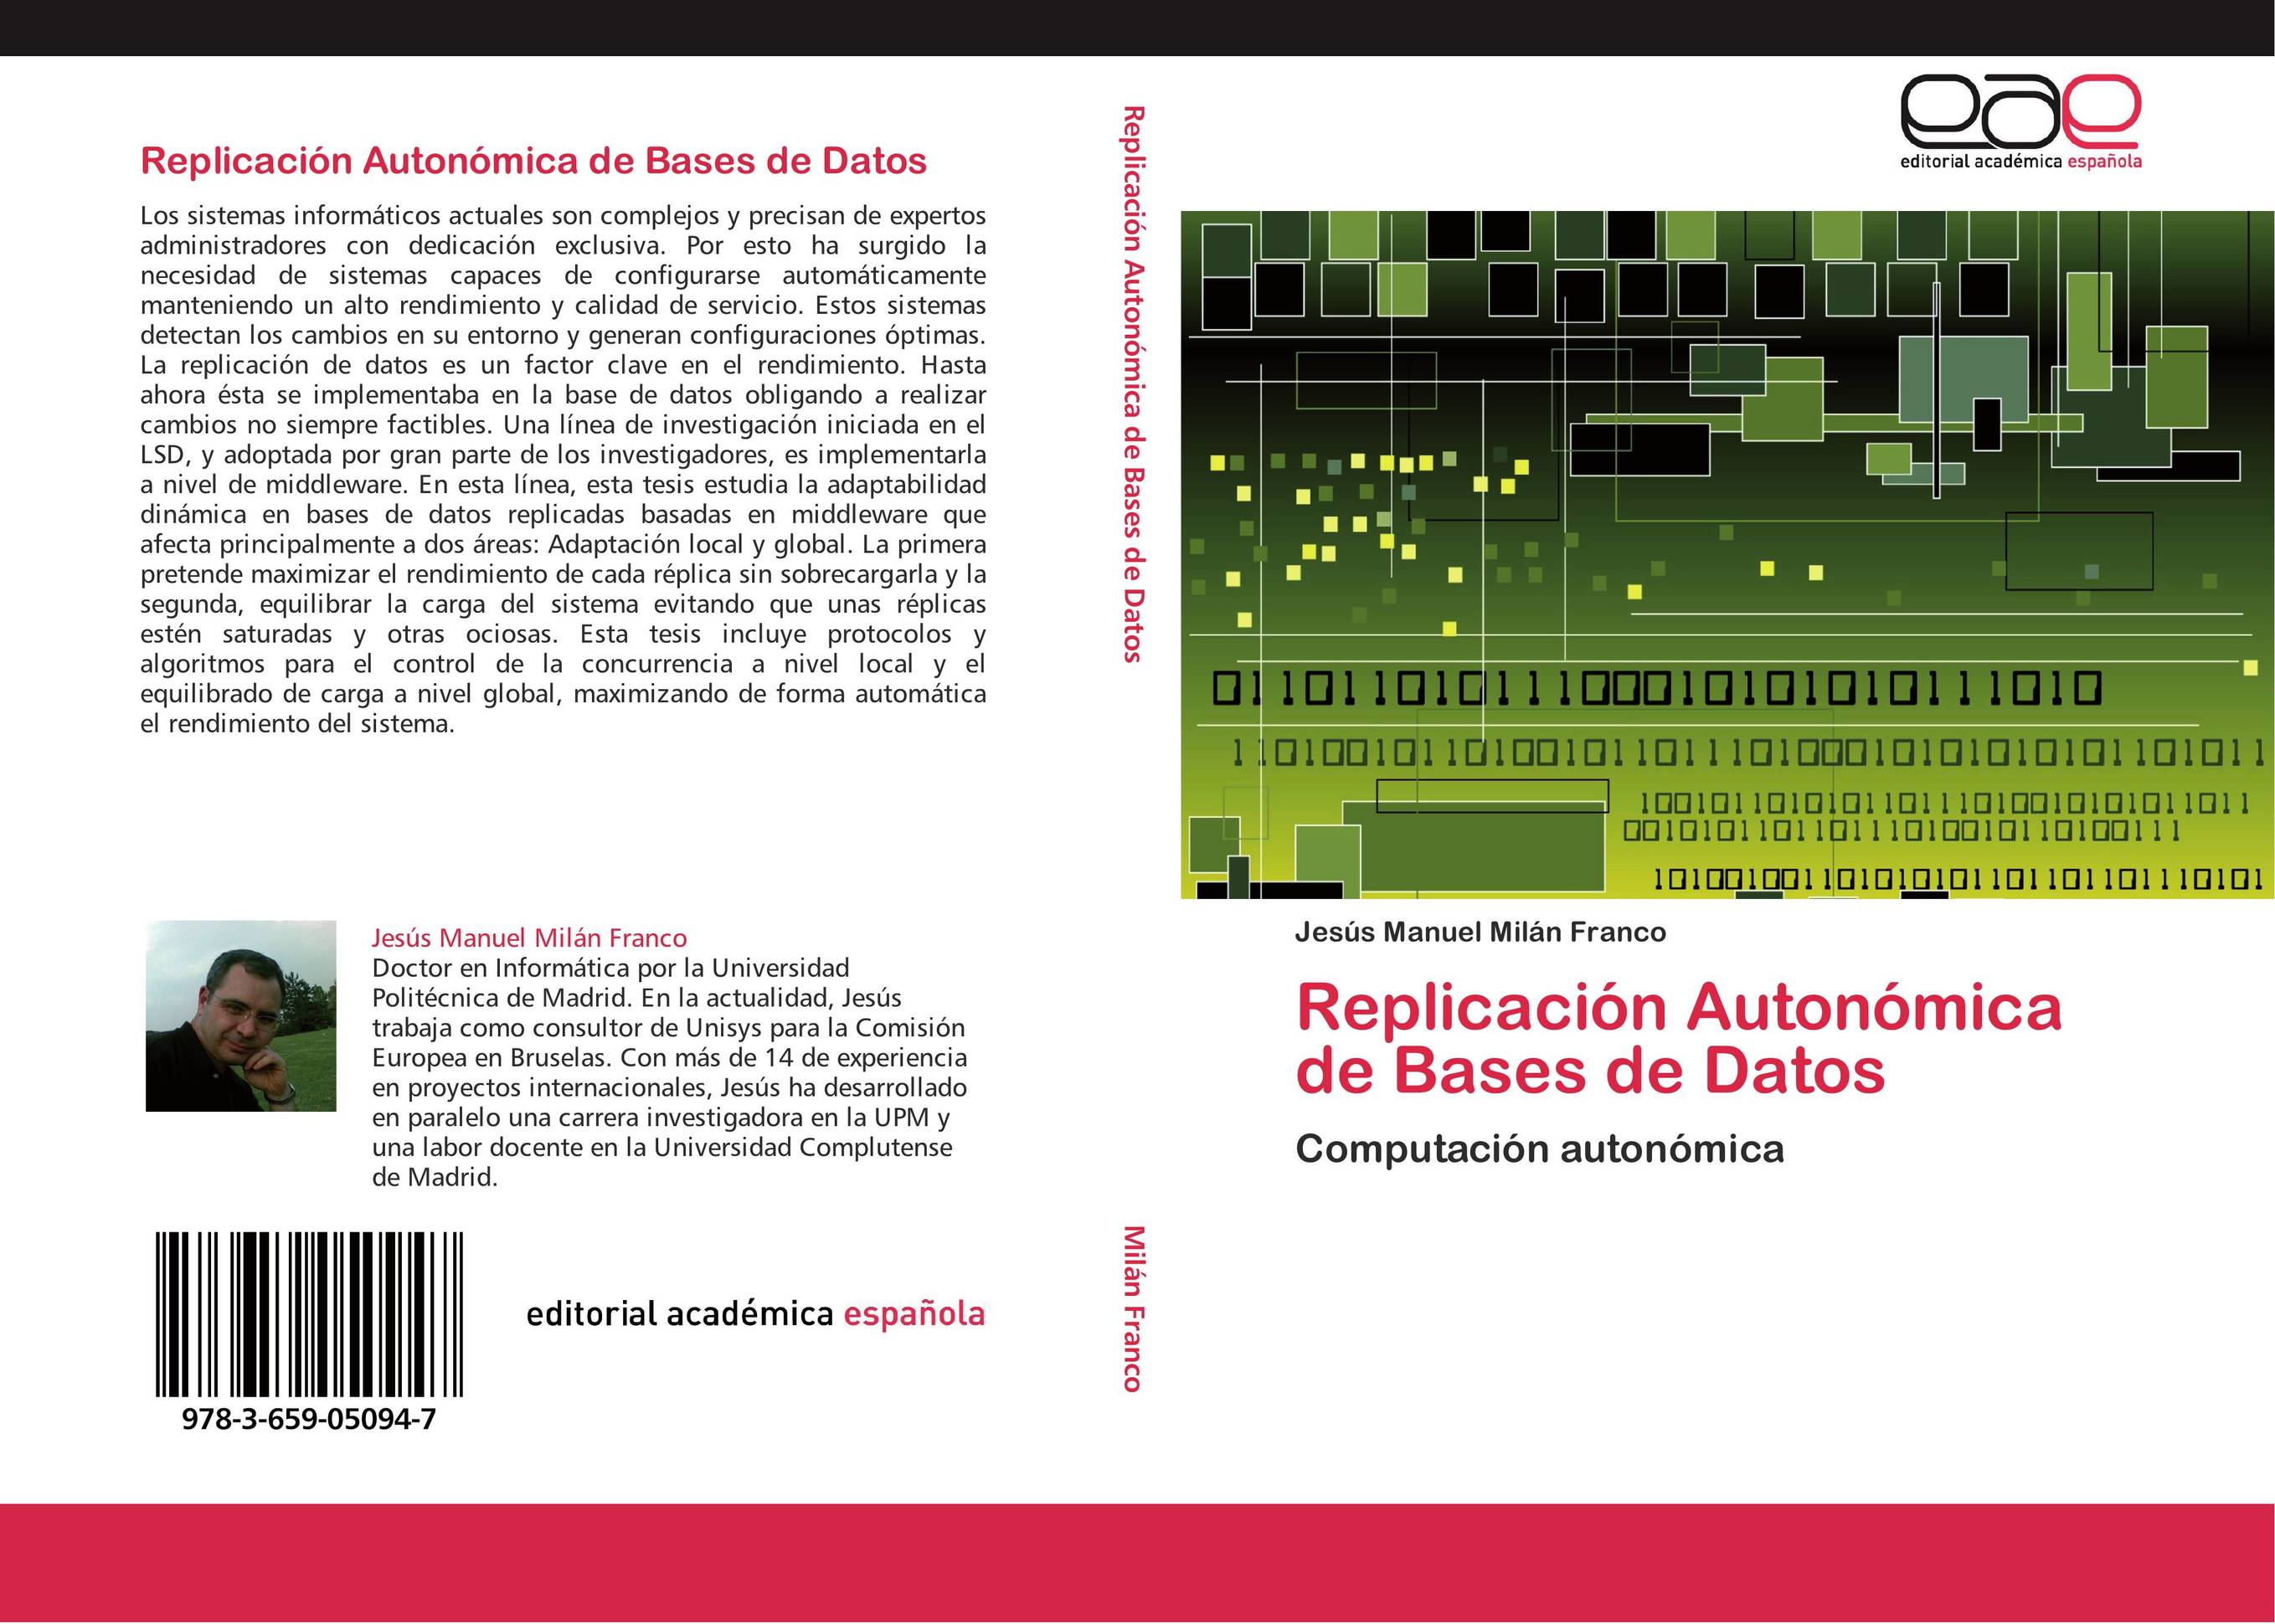 Replicación Autonómica de Bases de Datos